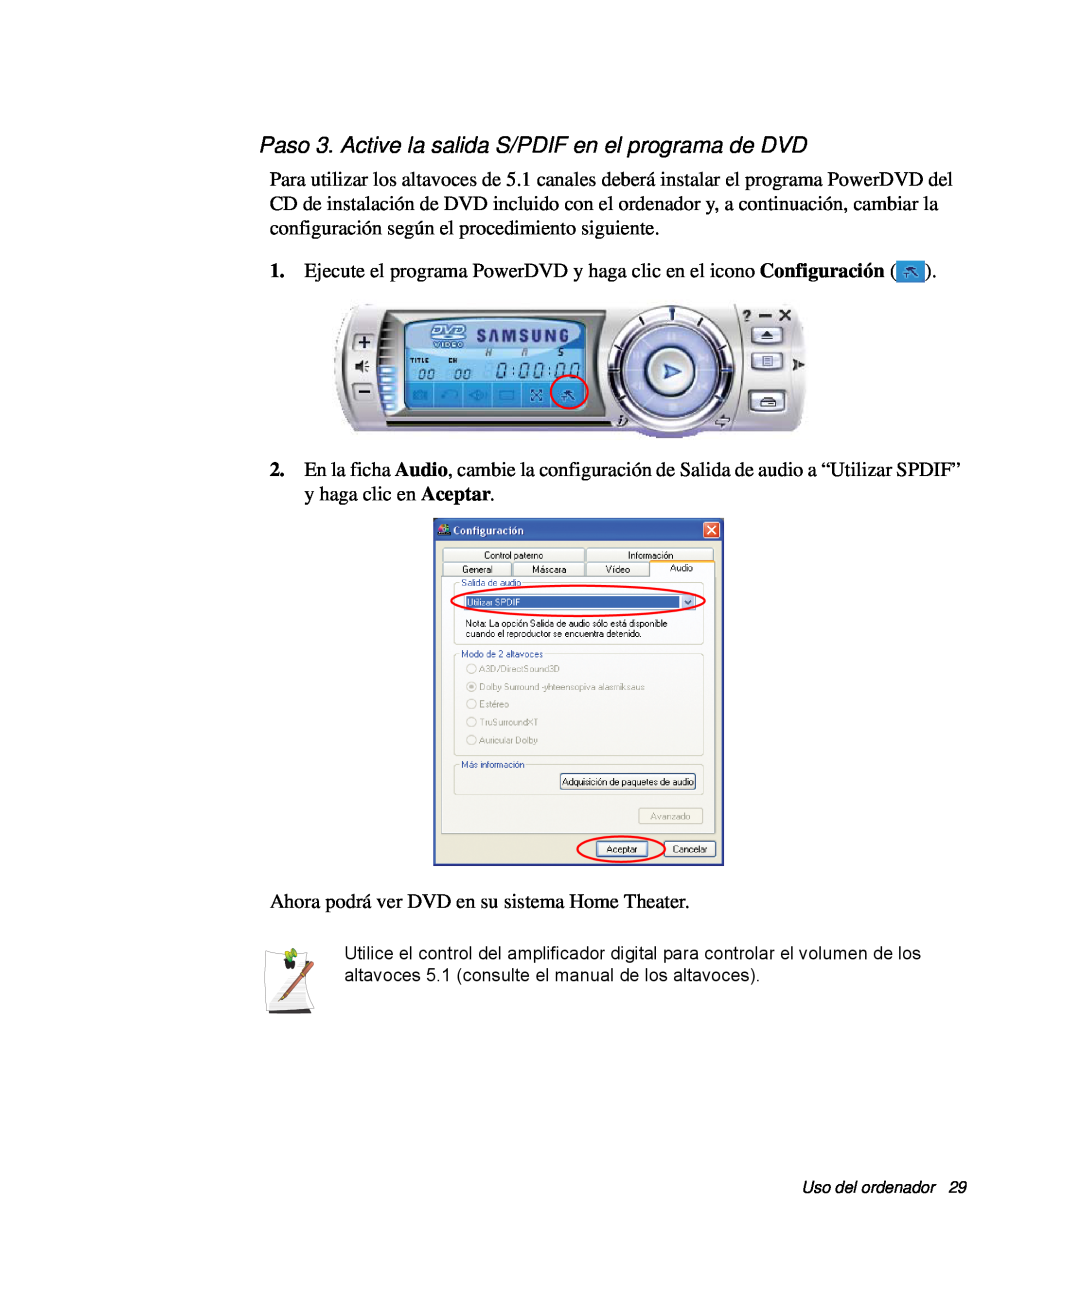 Samsung NP-Q30TY02/SES, NP-Q30T001/SES, NP-Q30CY01/SES, NP-Q30C002/SES Paso 3. Active la salida S/PDIF en el programa de DVD 